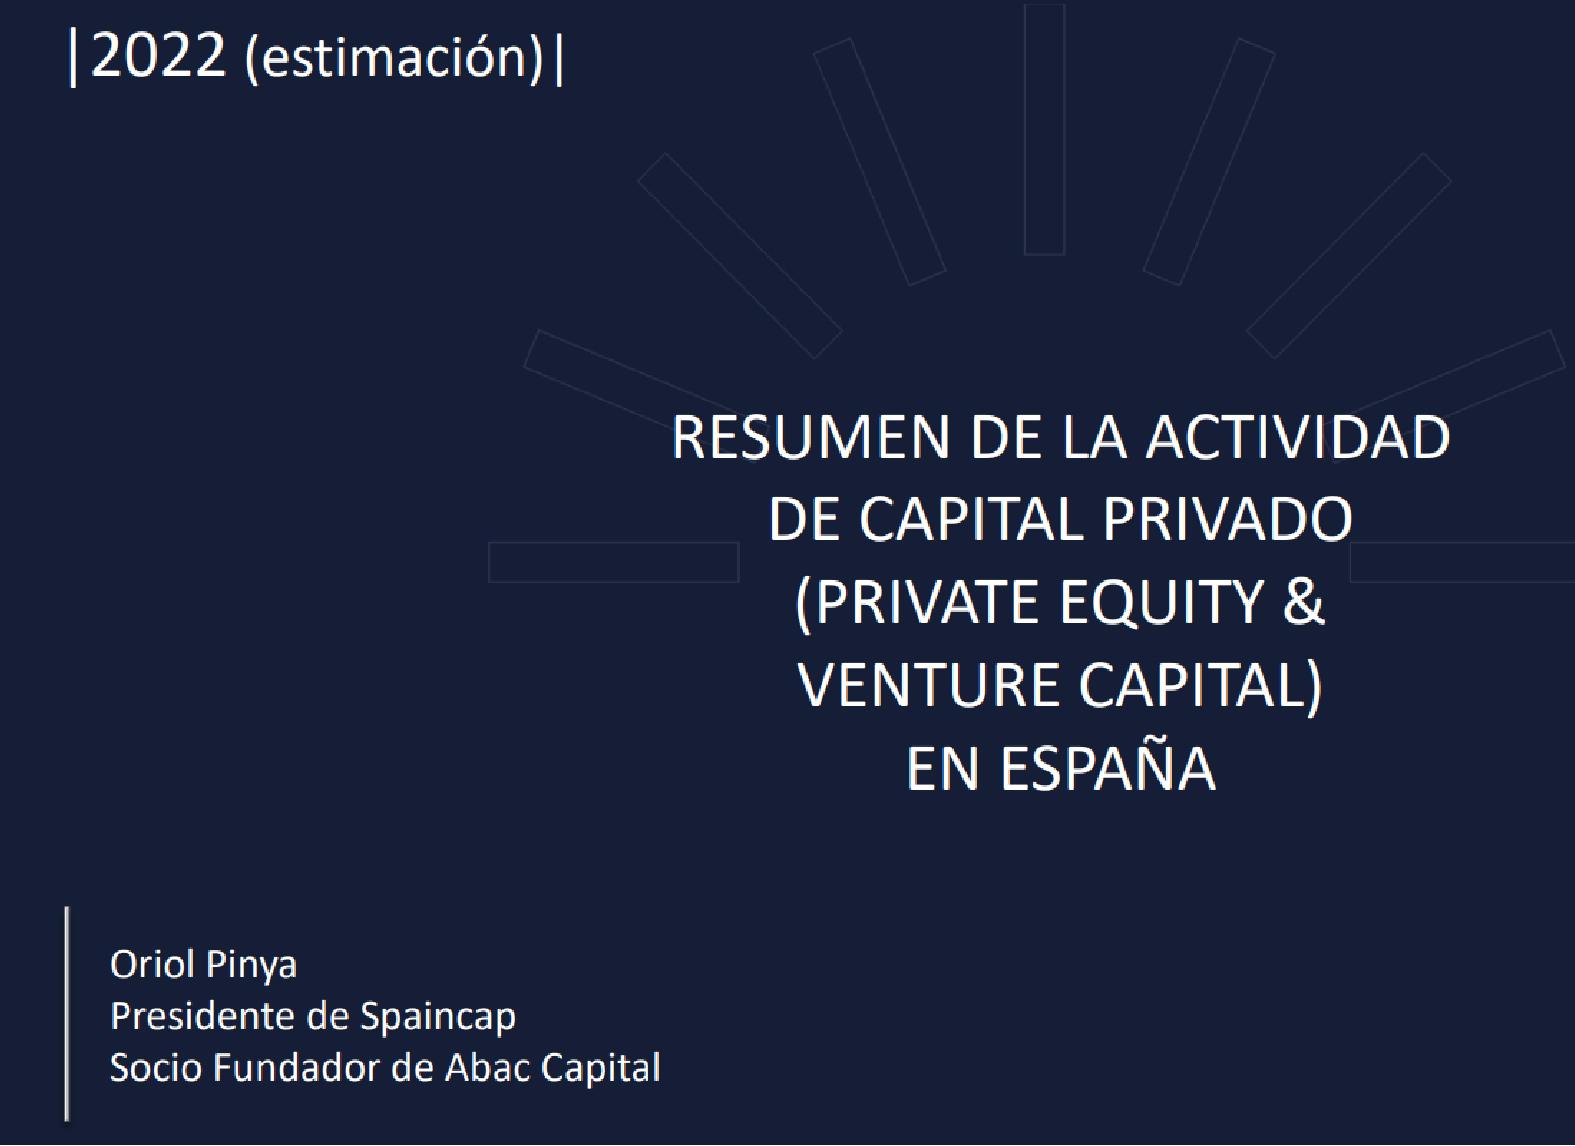 Estimación Venture Capital & Private Equity en España año 2022